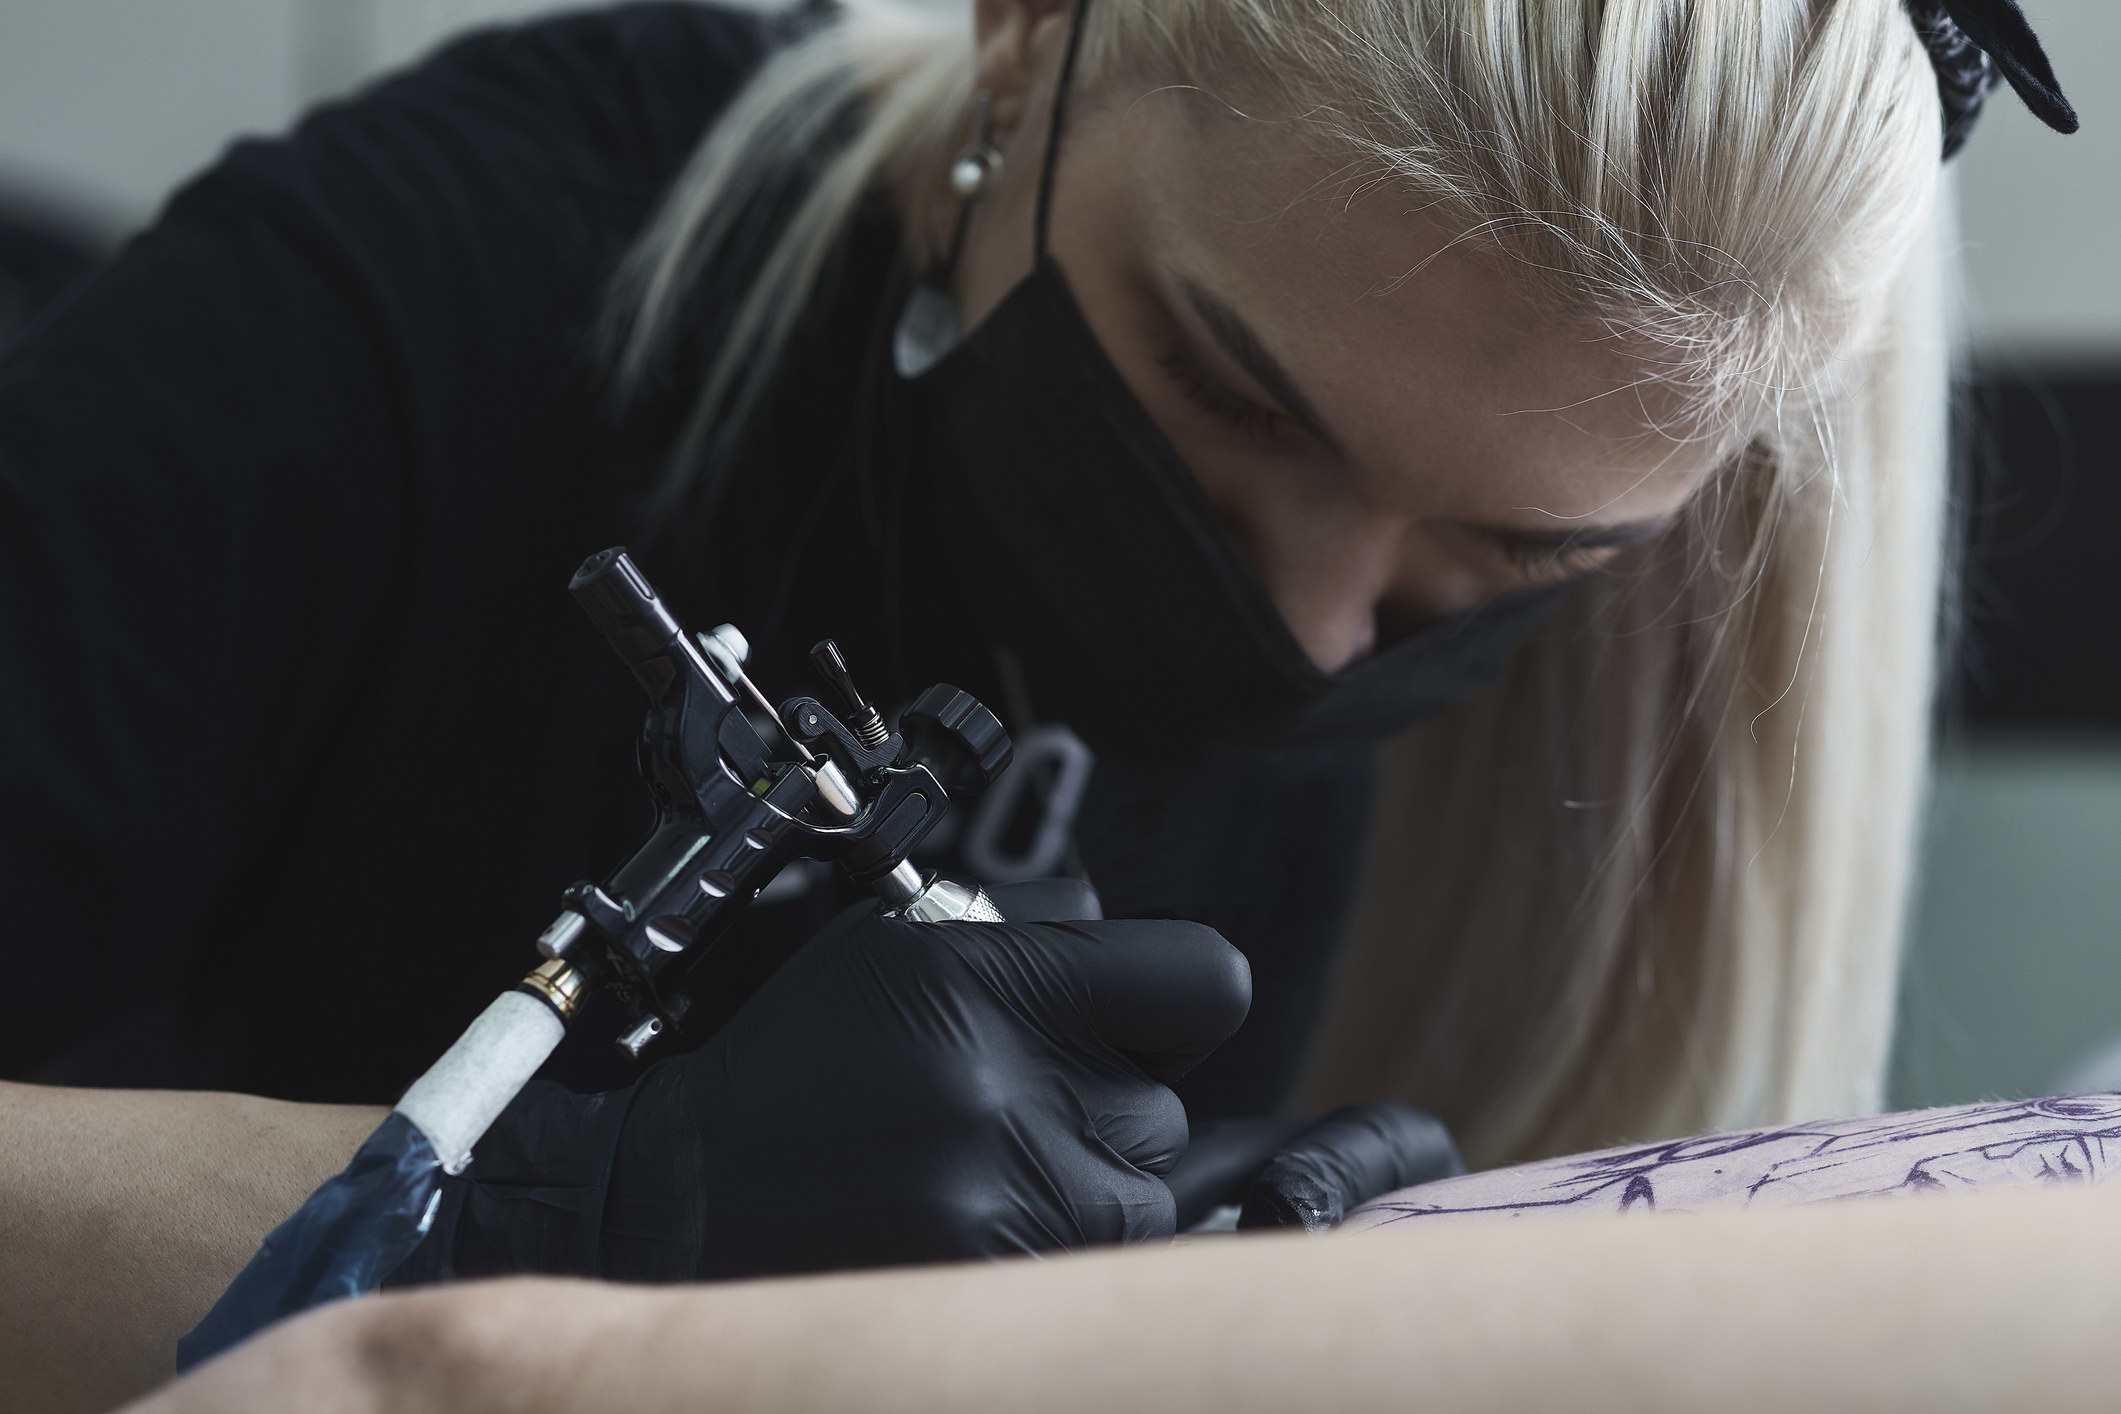 a tattoo artist tattooing someone